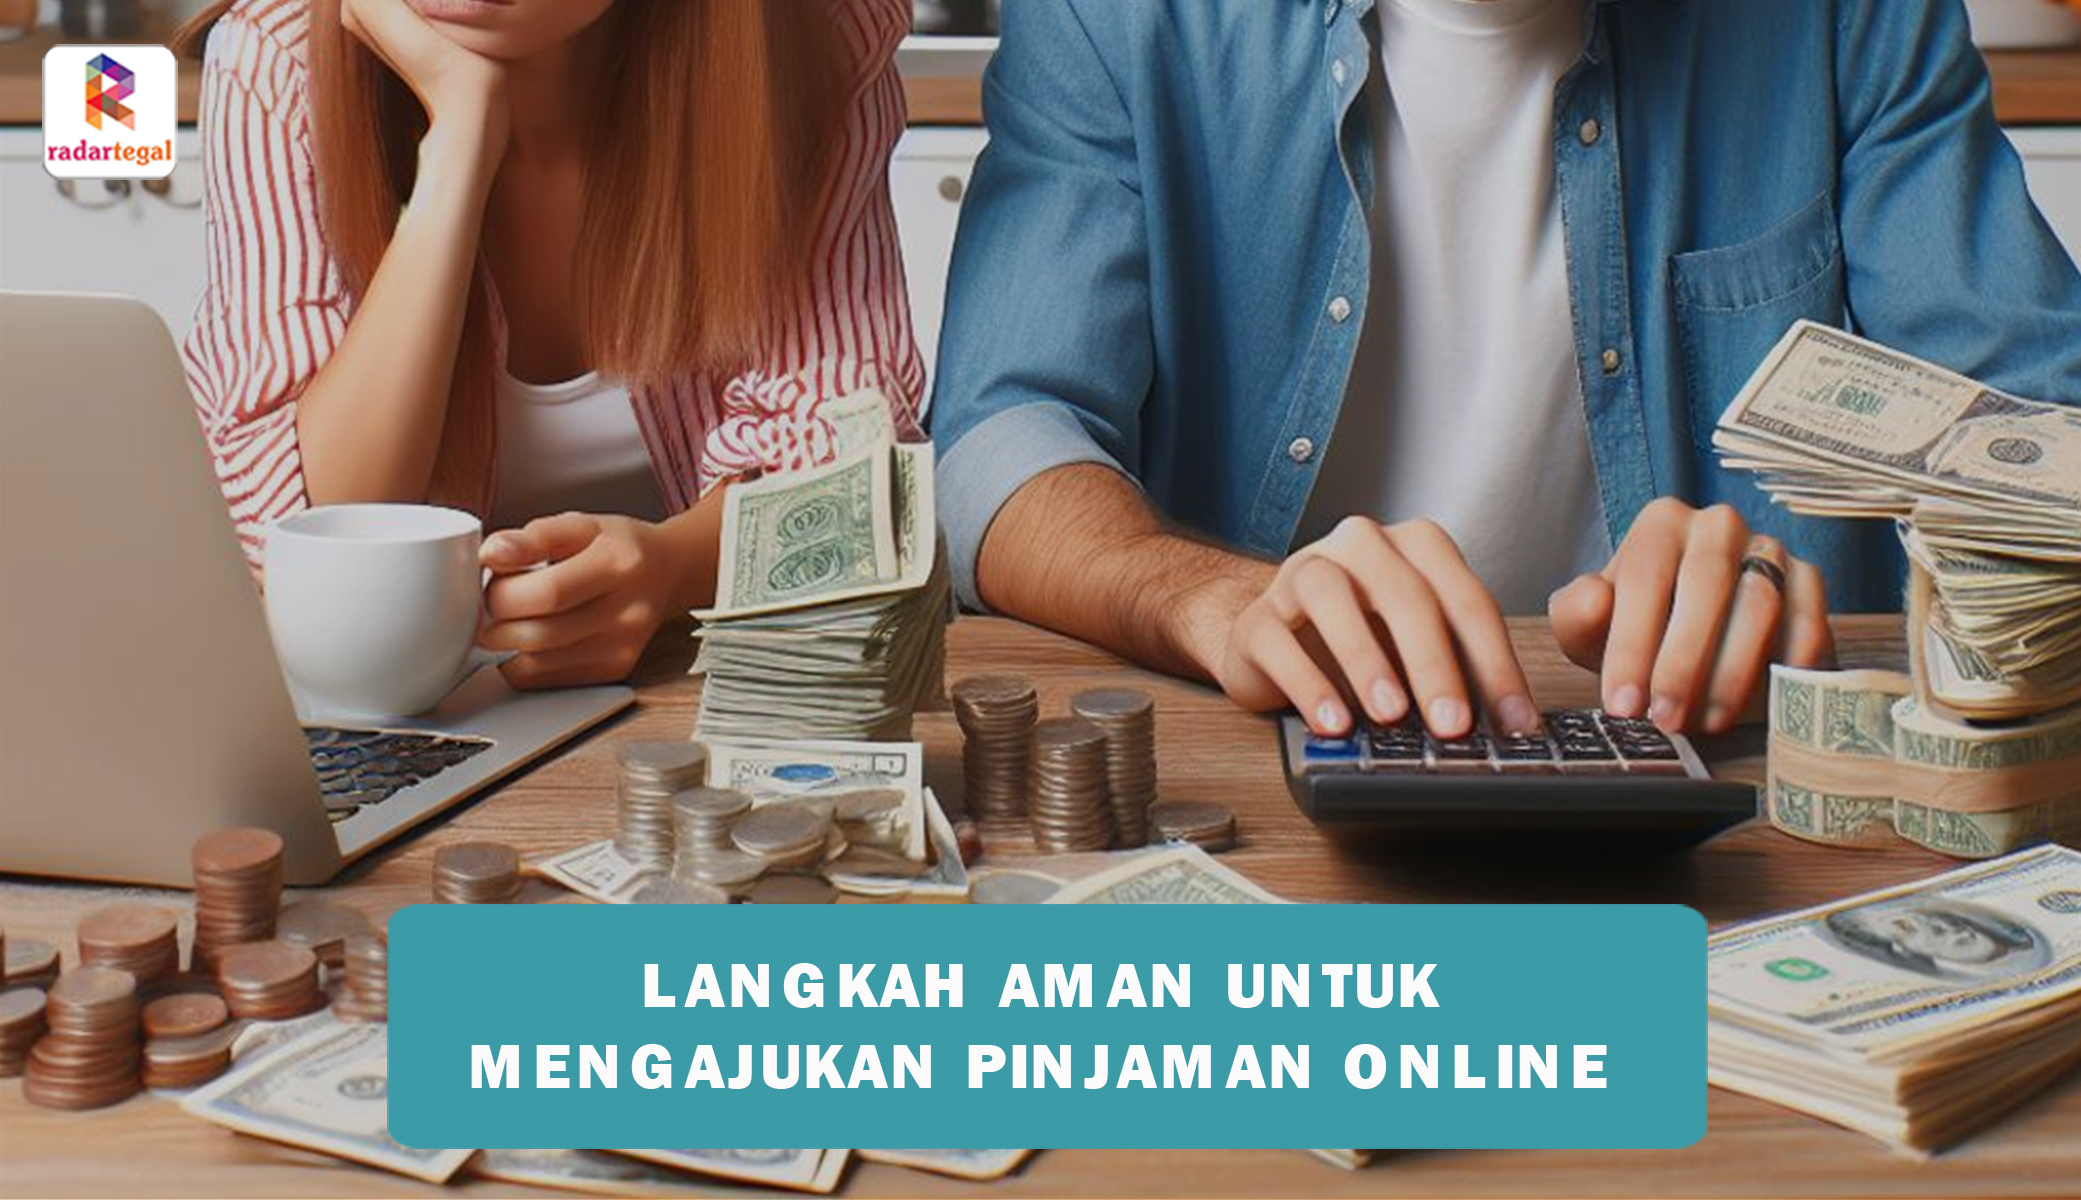 Langkah Langkah Aman Dalam Mengajukan Pinjaman Online Lakukan Tips Ini Agar Terhindar Dari Kerugian 8659